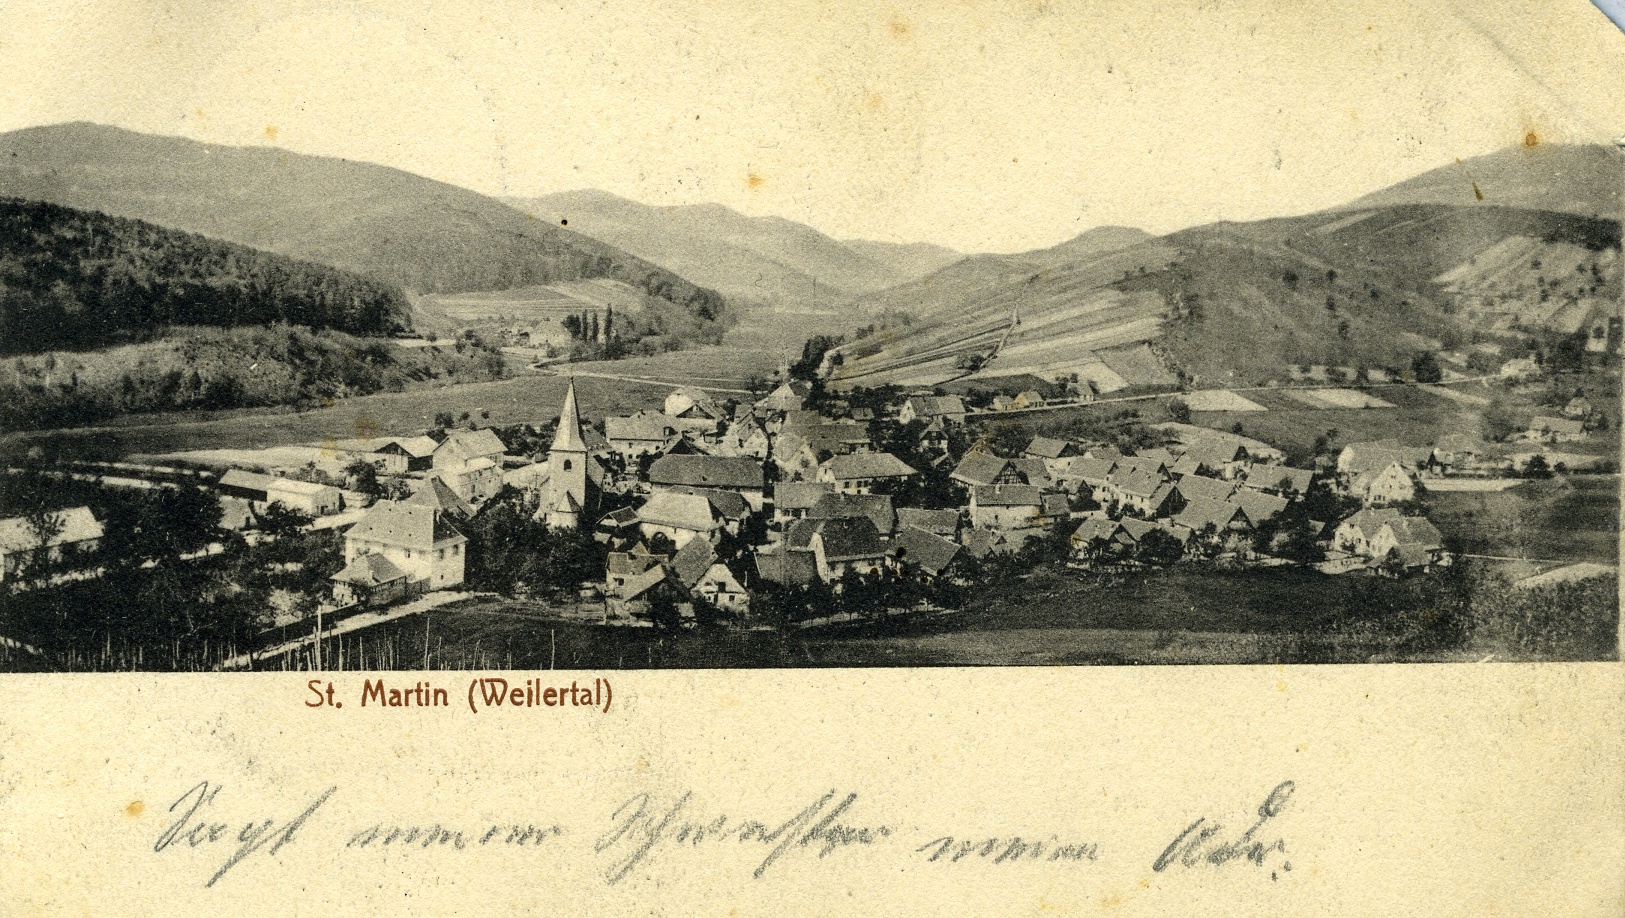 Fotopostkarte "St. Martin" (Historisches Museum der Pfalz, Speyer CC BY)